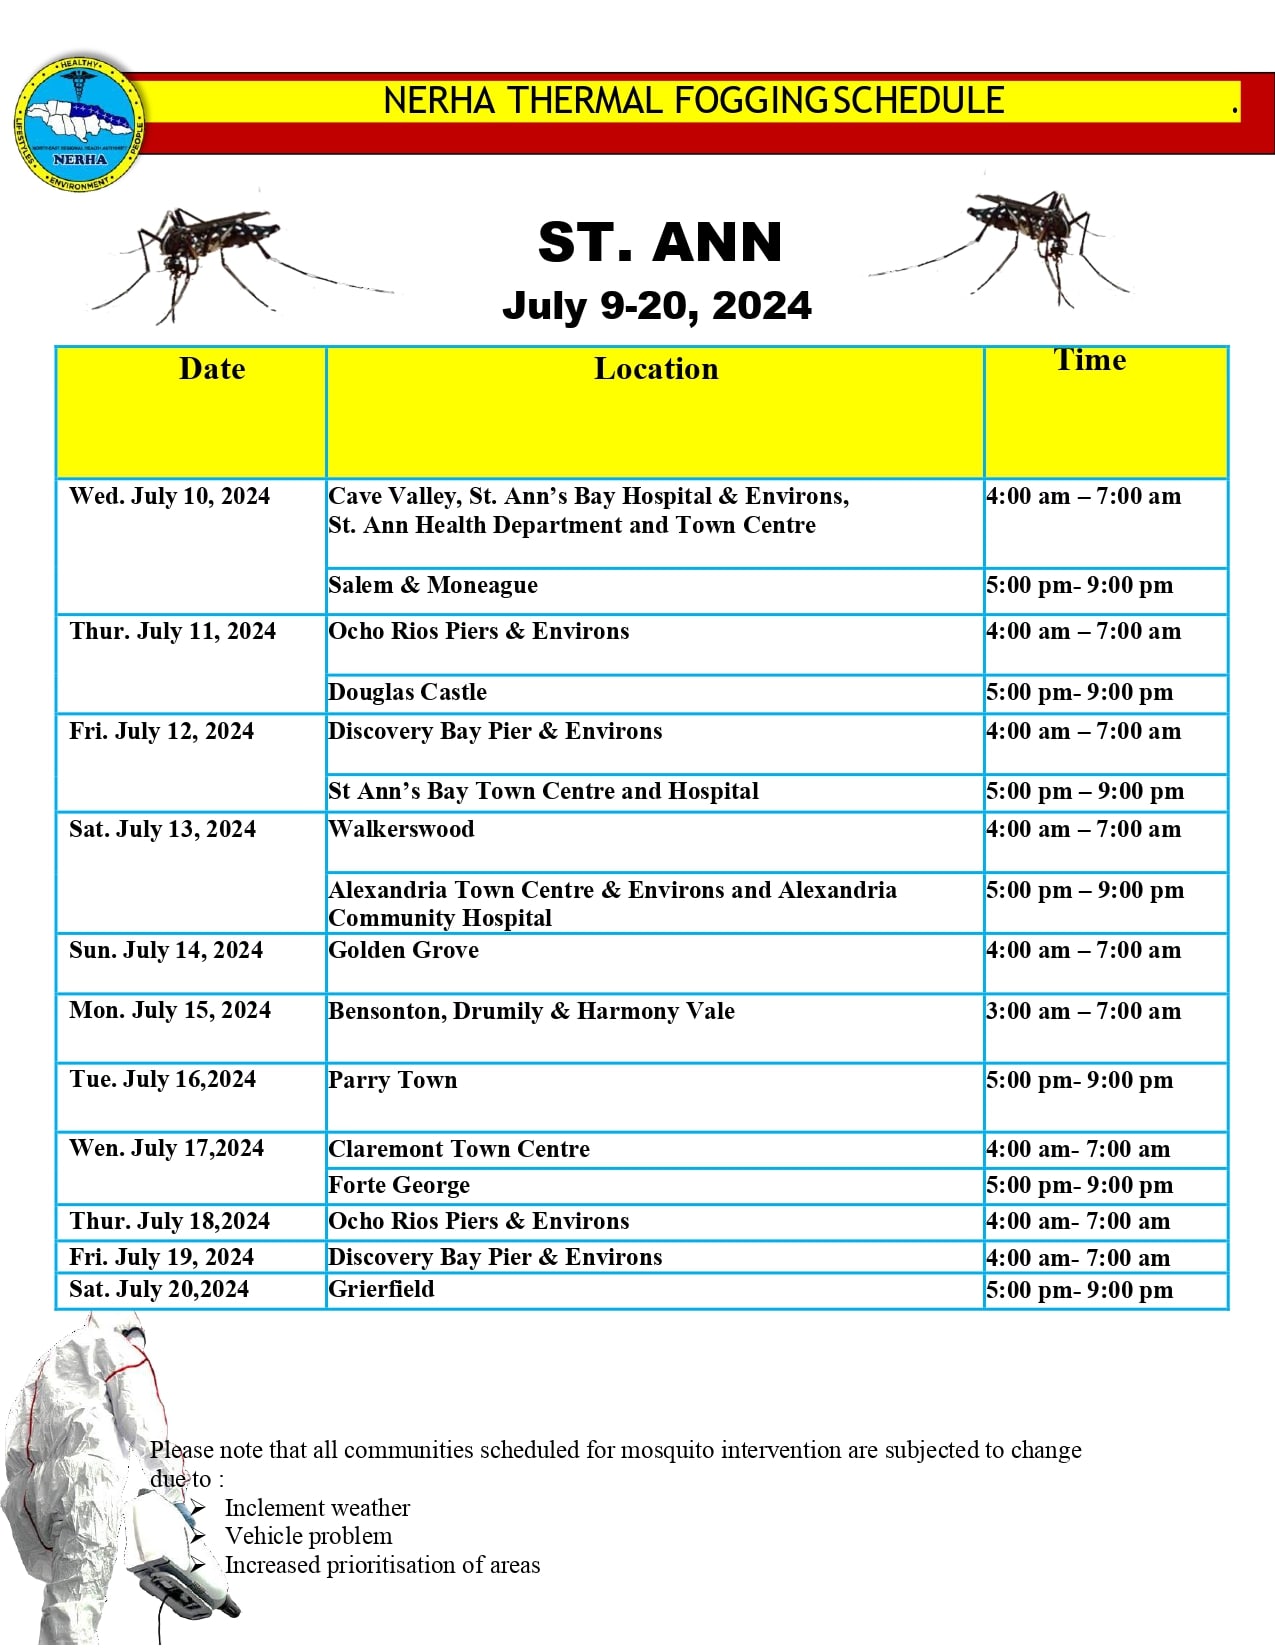 St Ann schedule